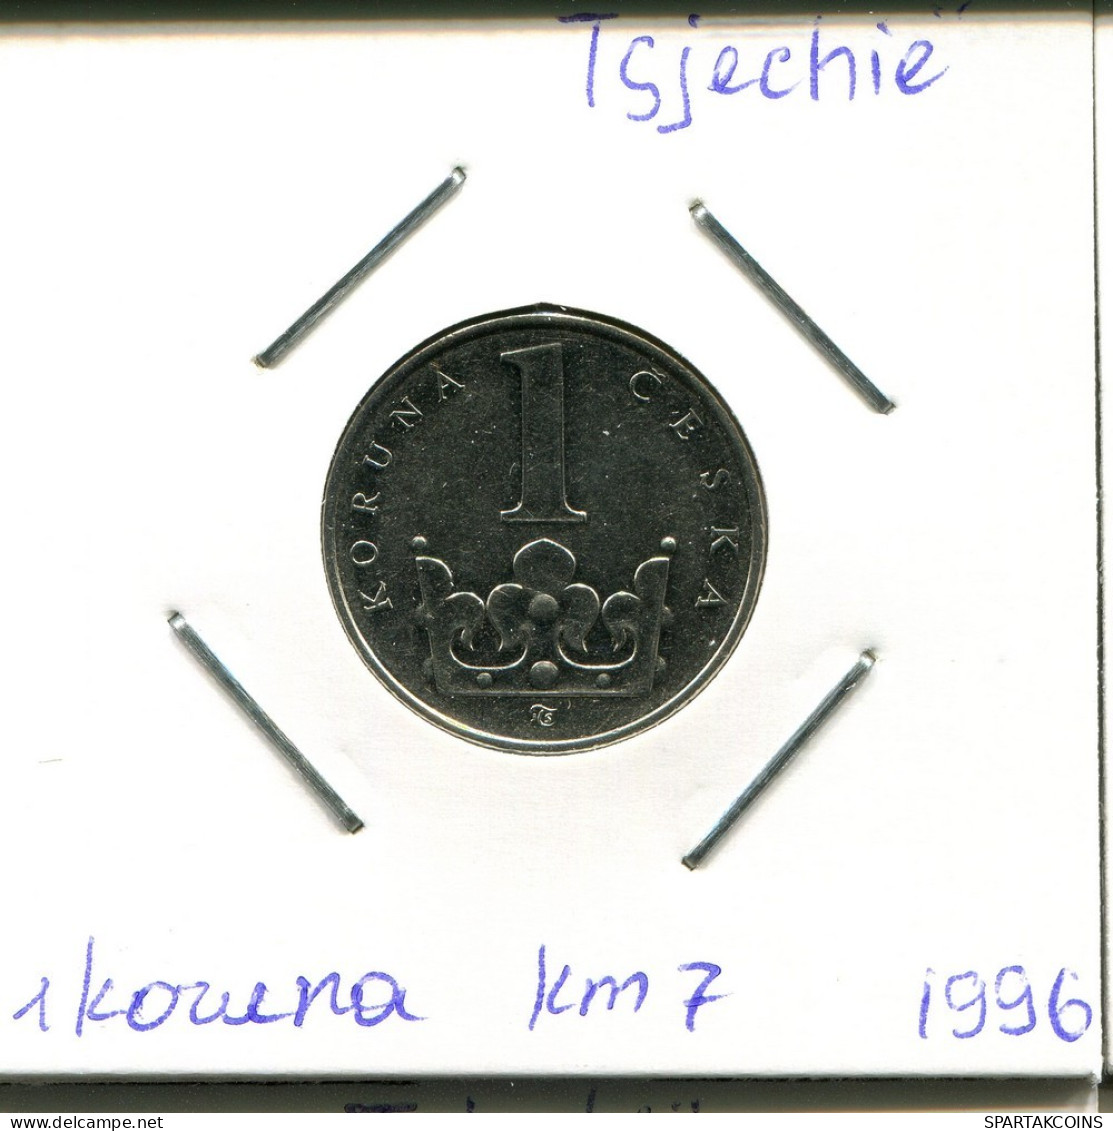 1 KORUNA 1996 CZECH REPUBLIC Coin #AP740.2.U.A - Tchéquie